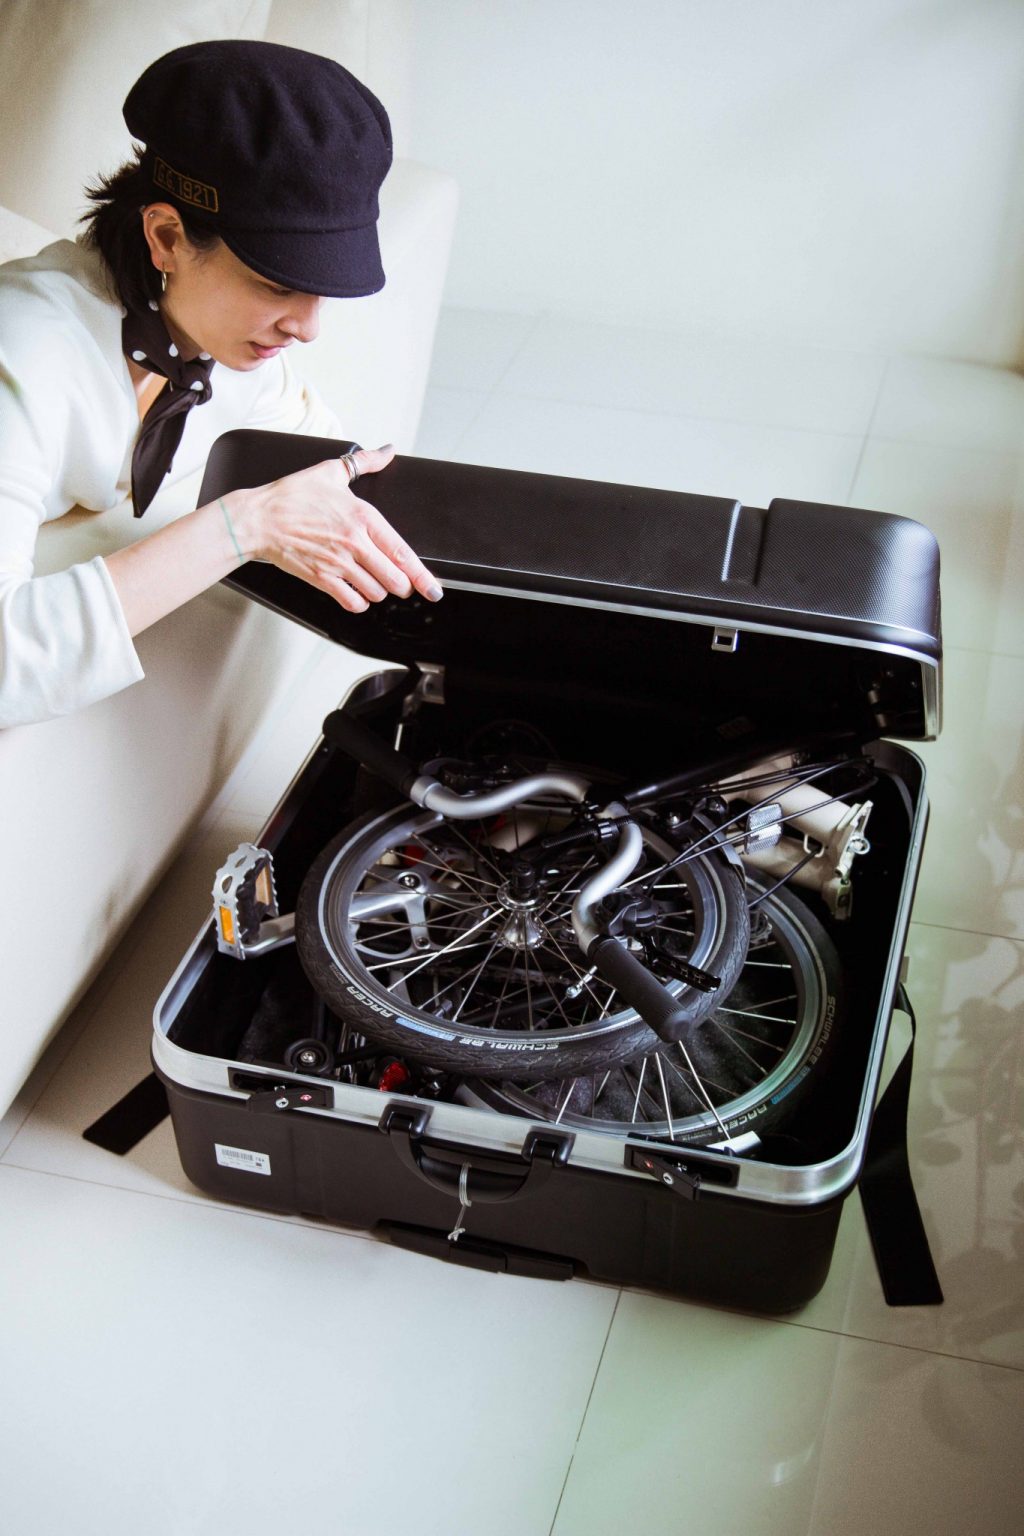 海外の場合、荷物は20キロと決まっている ので、荷物は極力少なめに。白い〈ブロンプトン〉の折りたたみ自転車を持っていく。